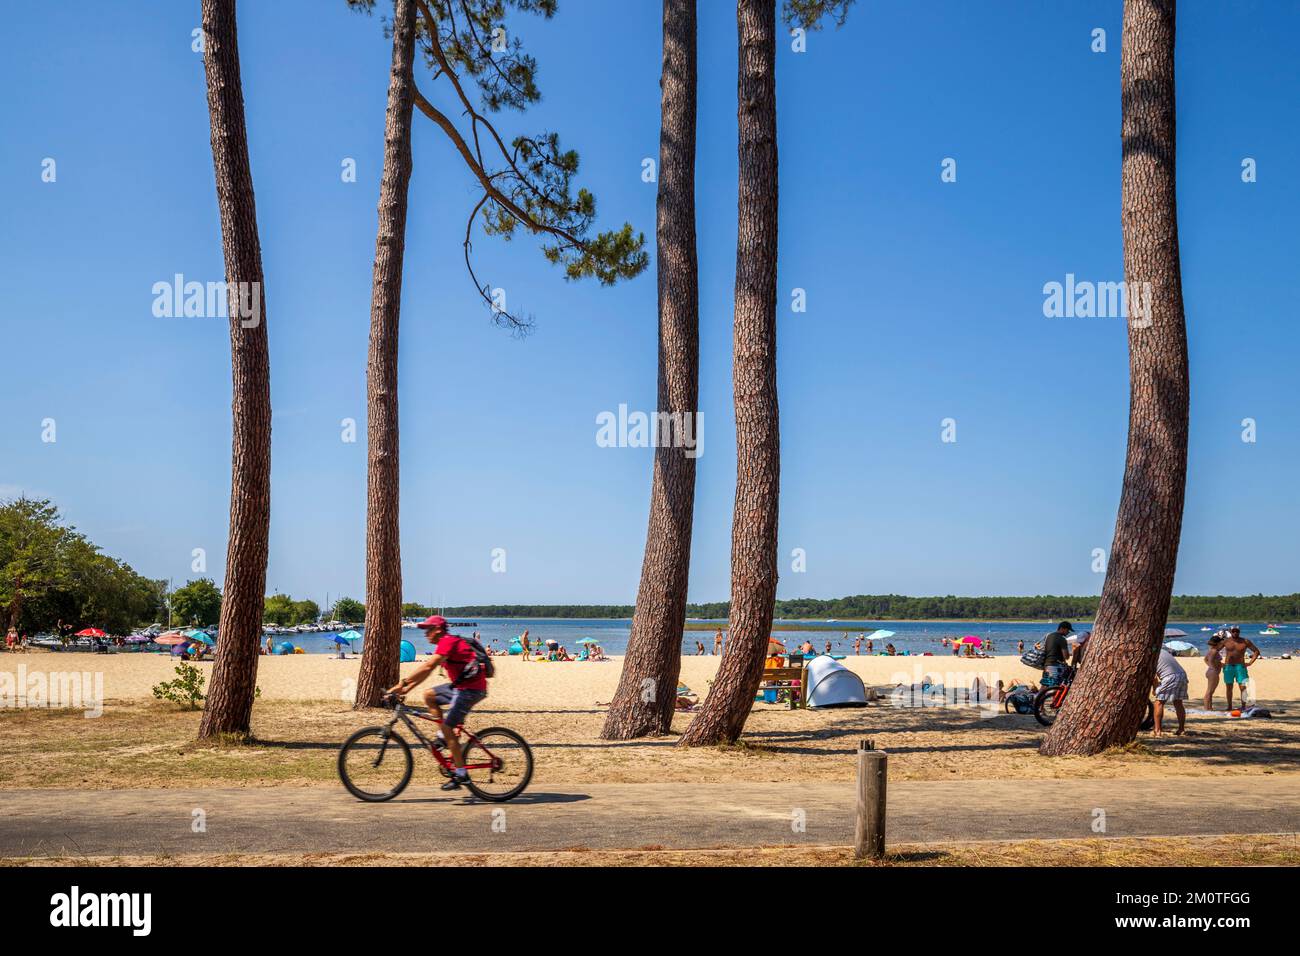 France, Landes, Sanguinet, sandy beach of Etang de Cazaux and Sanguinet Stock Photo